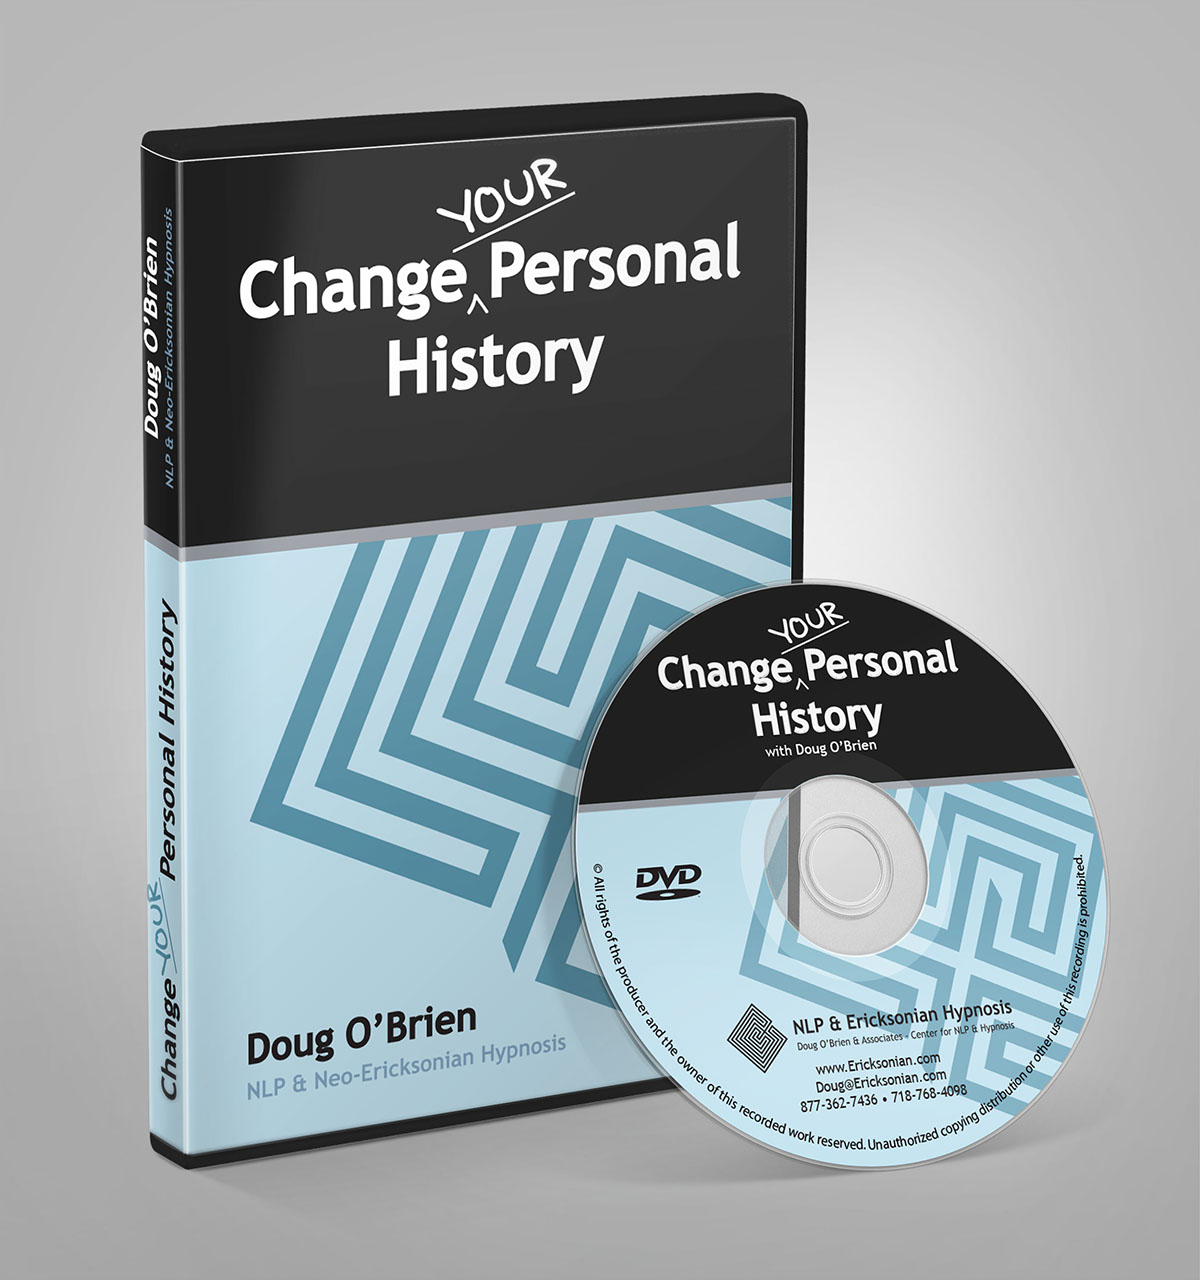 DVDs cds package design 